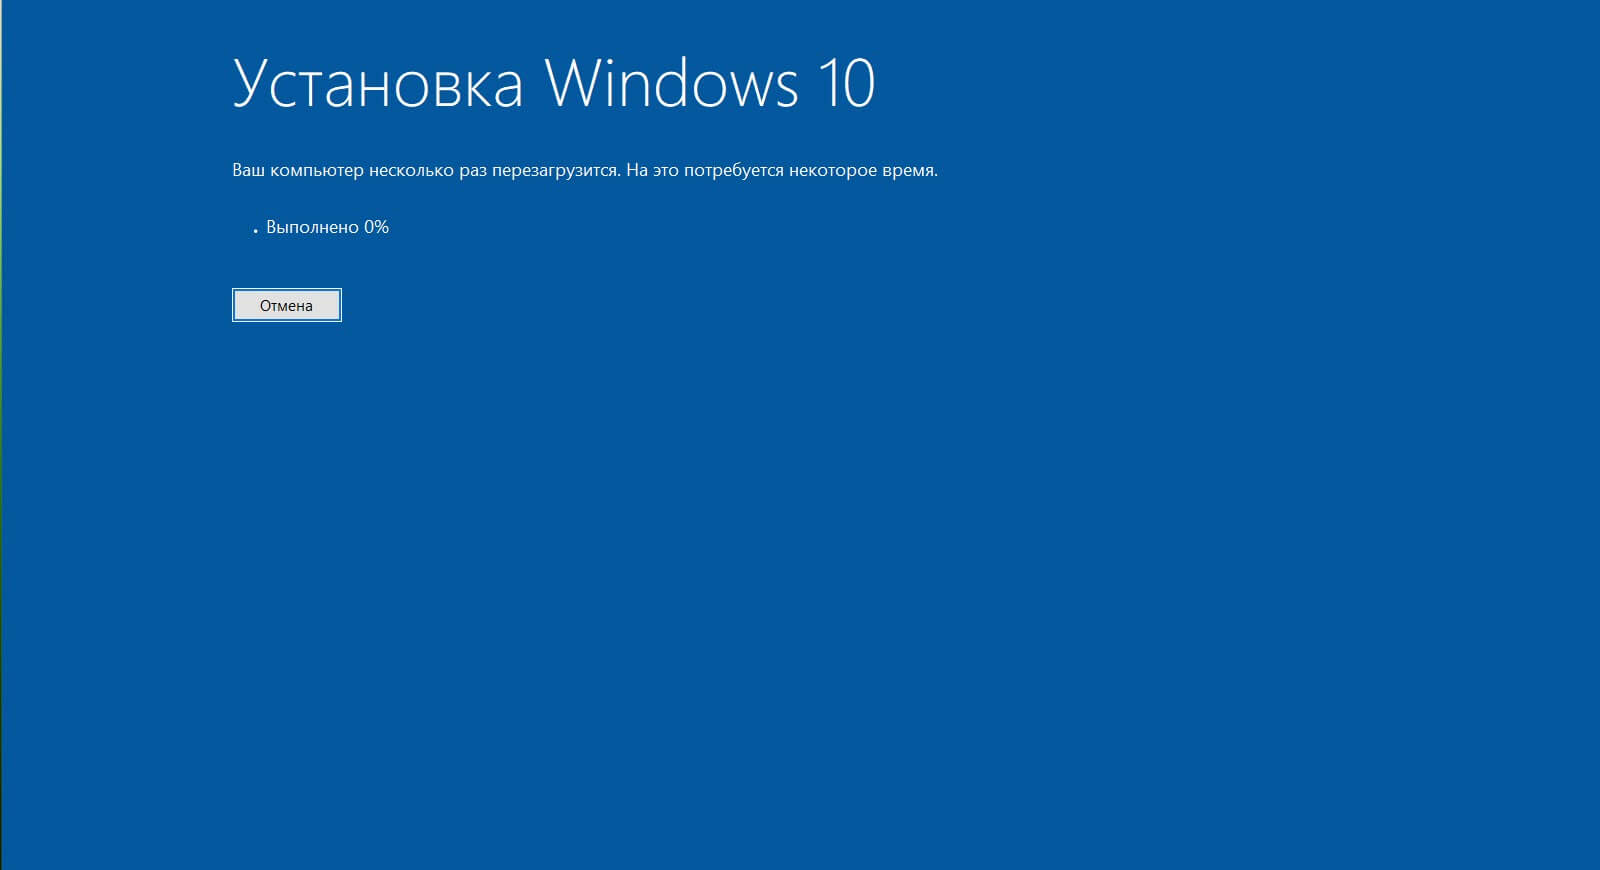 Во время Установки Windows 10 ваш компьютер может перезагрузится несколько раз. будьте терпеливы.